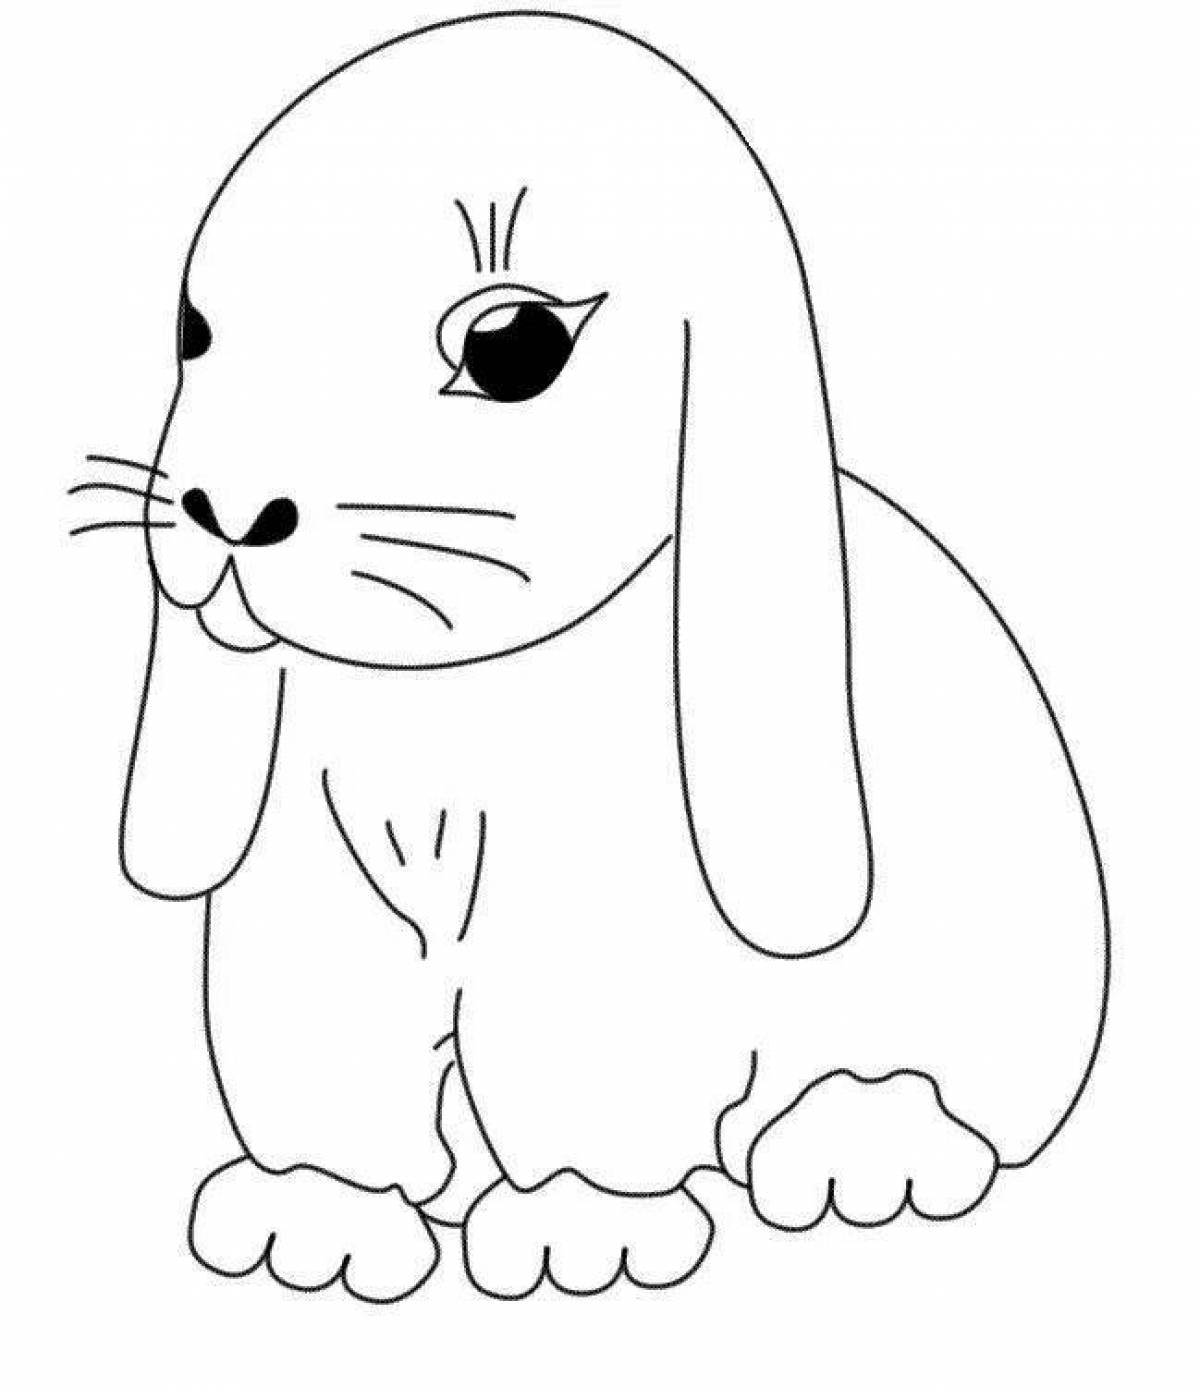 Snag rabbit coloring